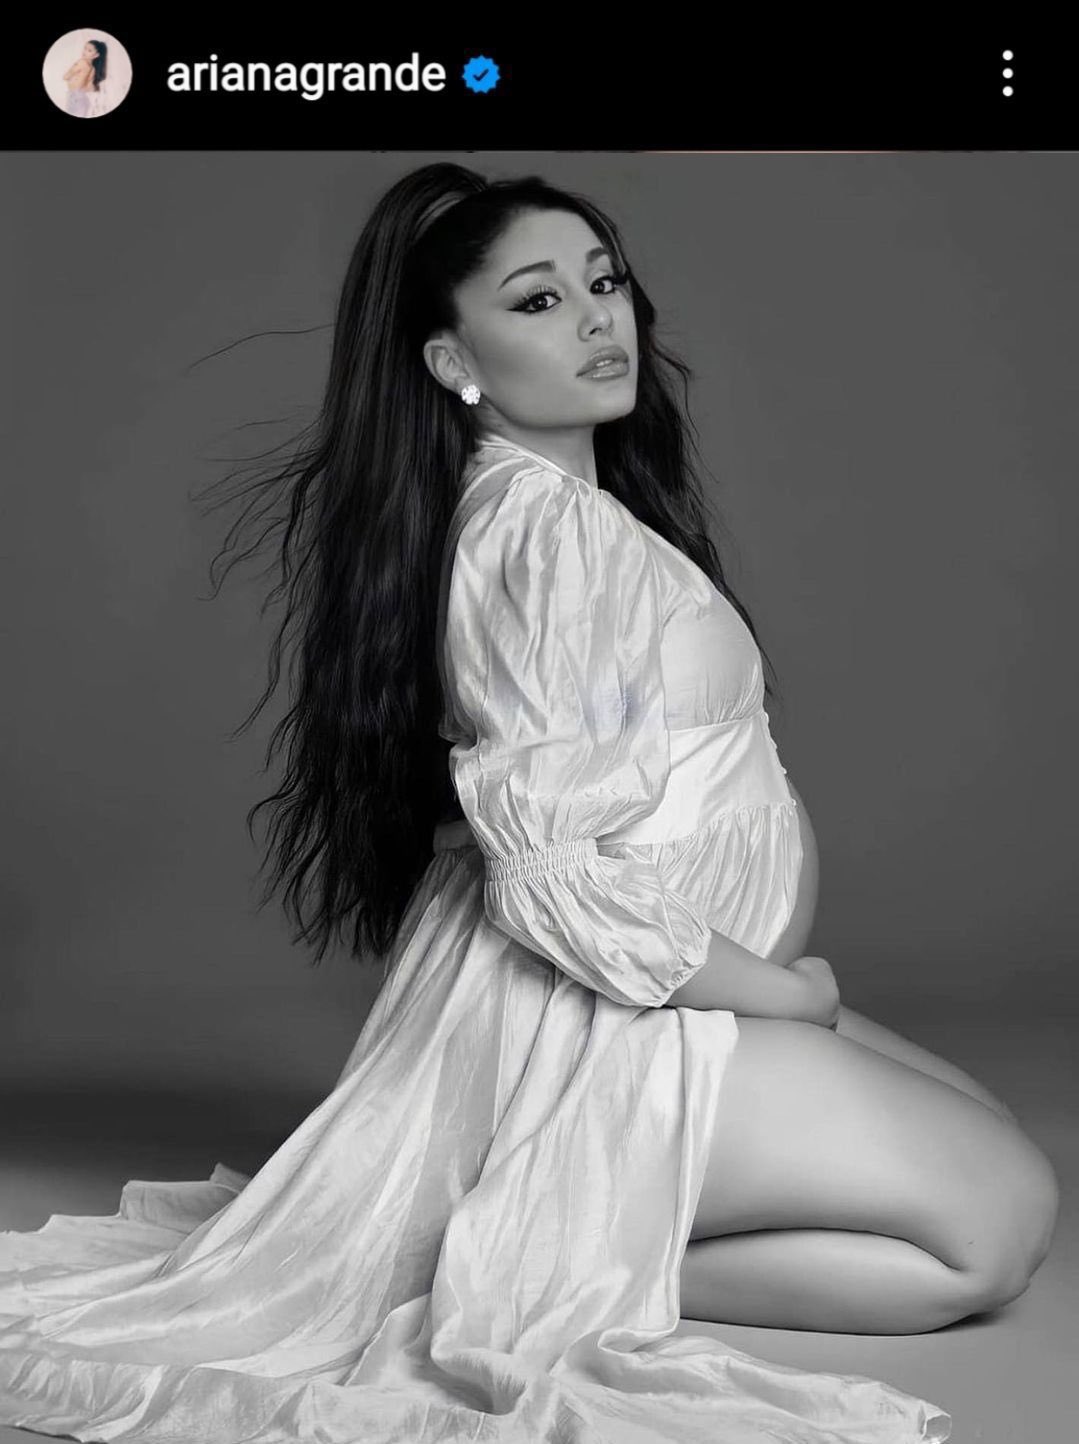 Ariana grande pregnant